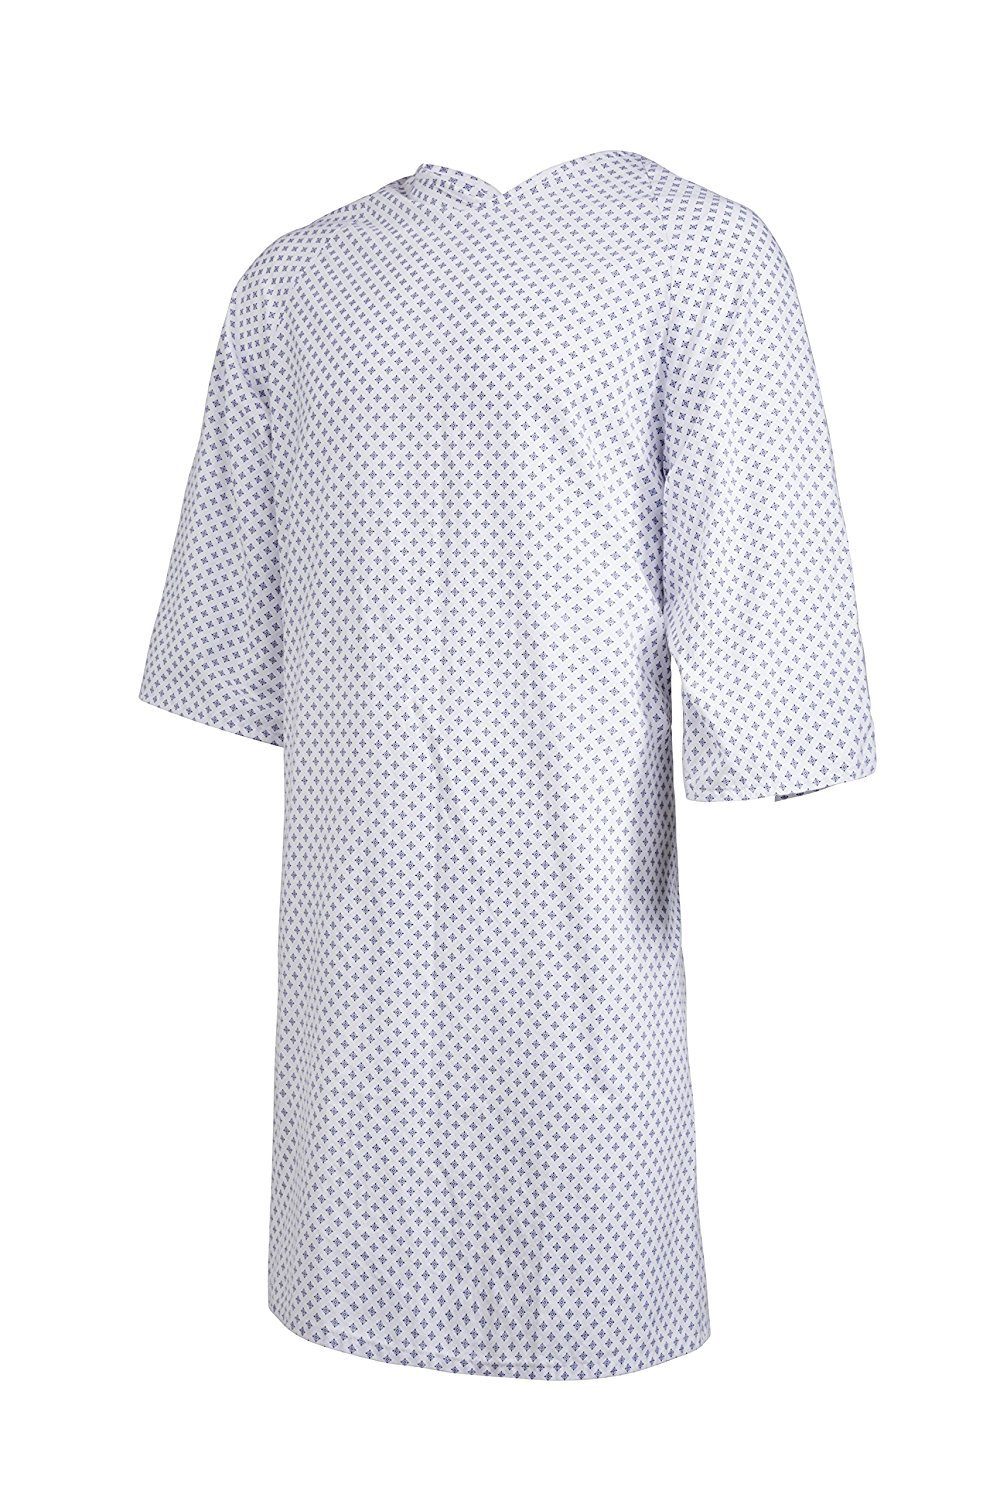 Clinotest Nachthemd Patientenhemd/Nachthemd/Krankenhaushemd/Pflegehemd